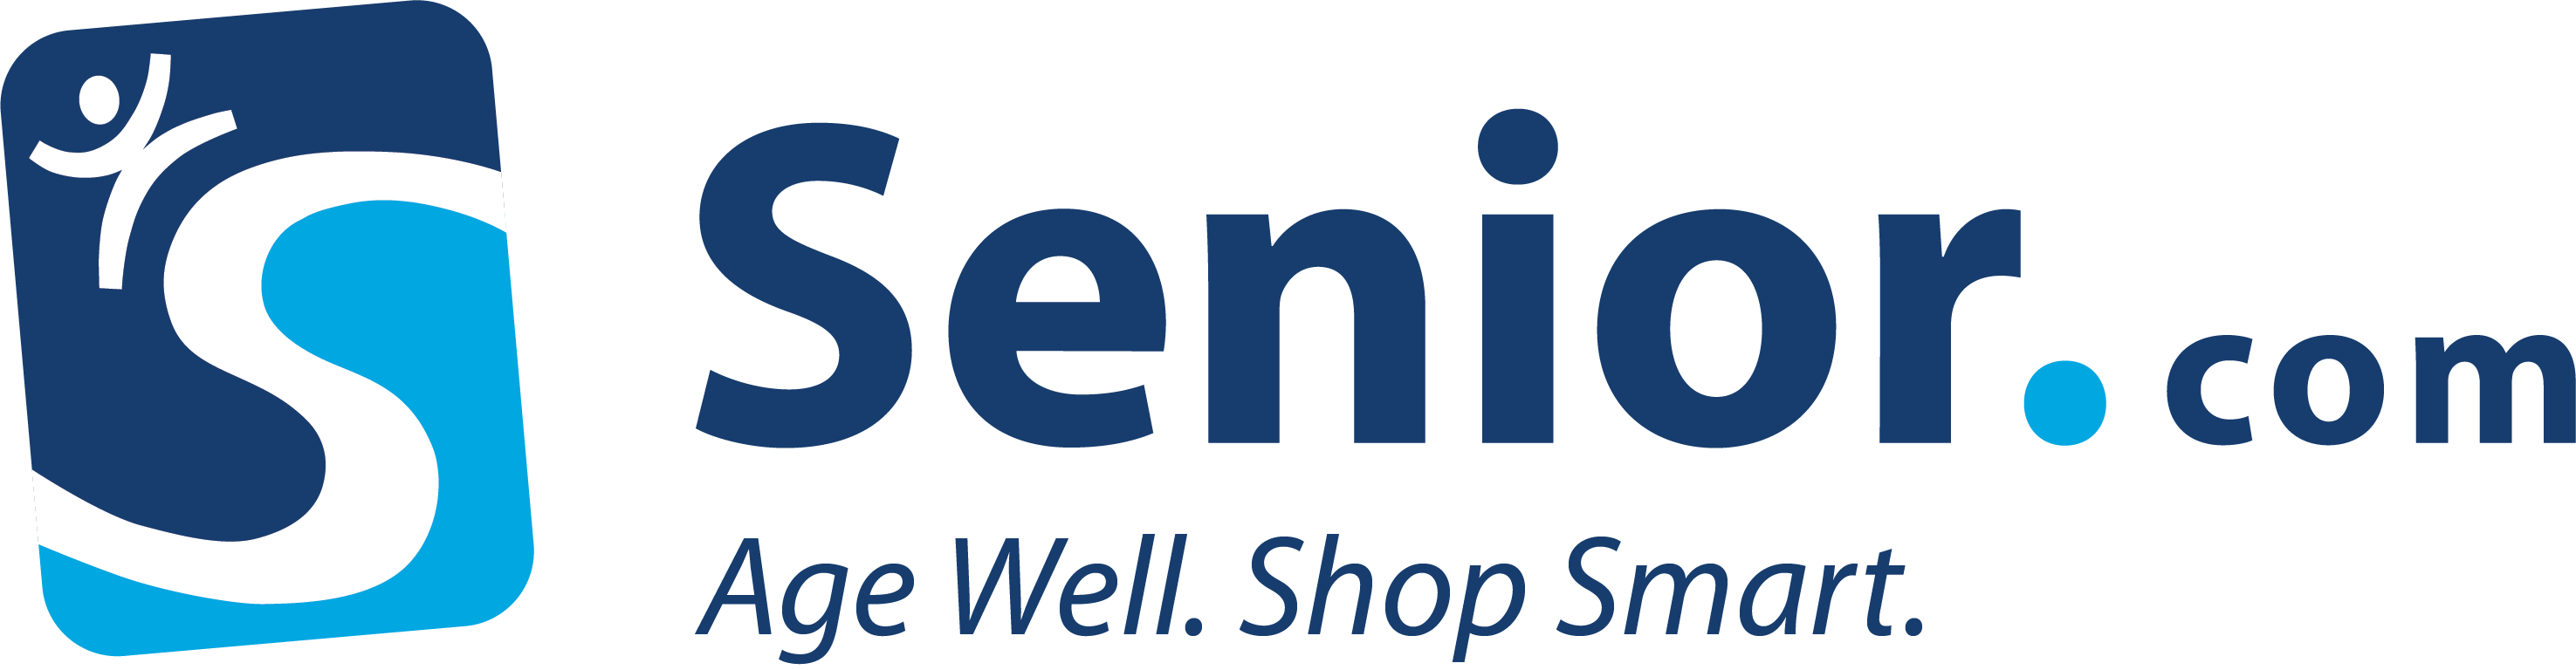 senior.com official logo